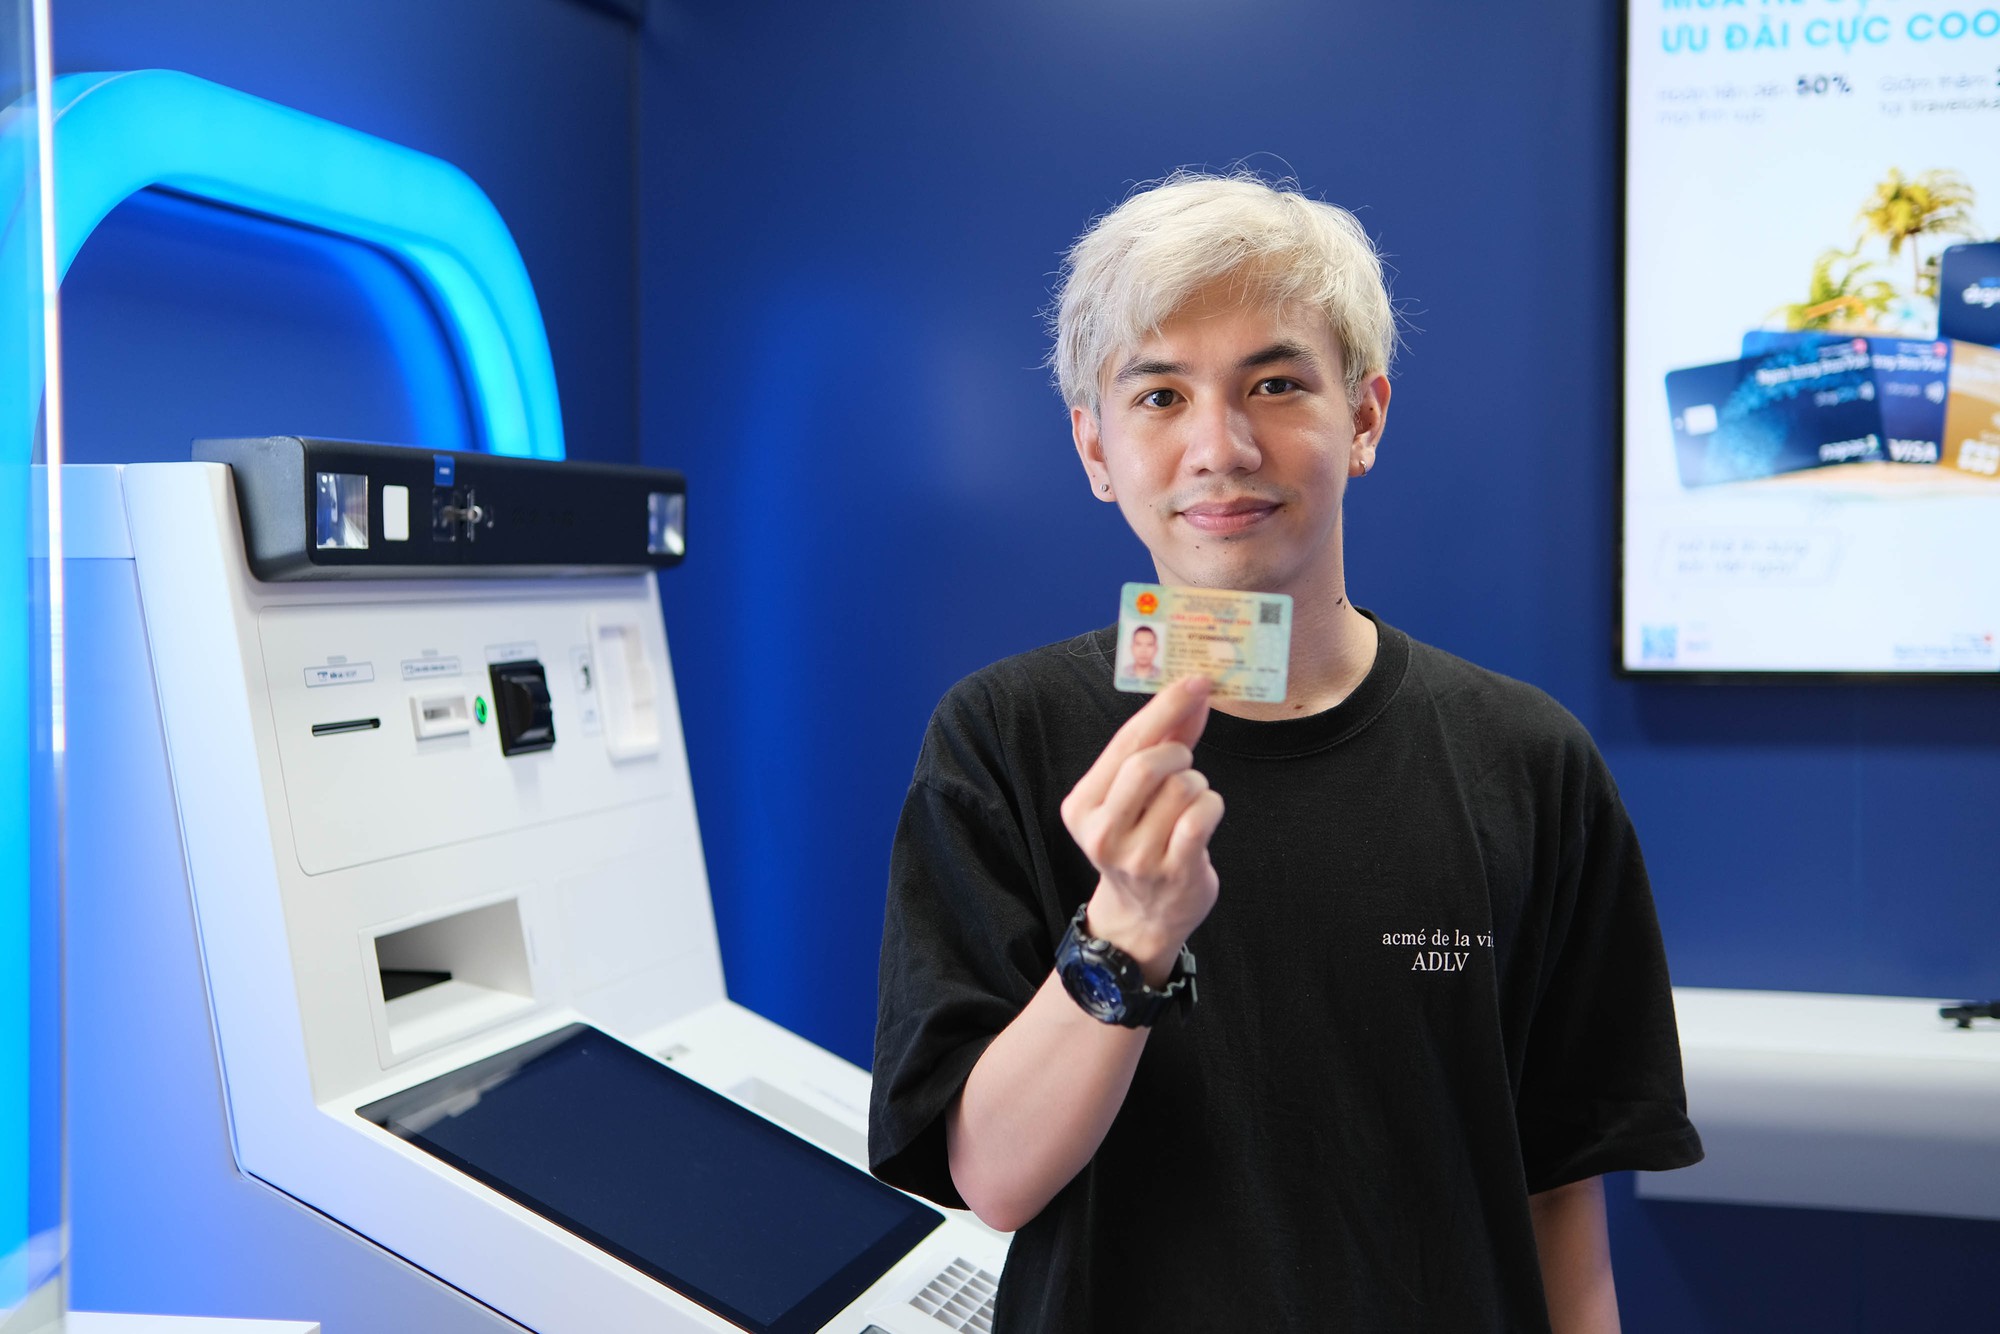 Trải nghiệm rút tiền tại ATM bằng CCCD gắn chip: Quy trình nhanh – gọn – lẹ, đã đến lúc tạm biệt thẻ ATM? - Ảnh 1.